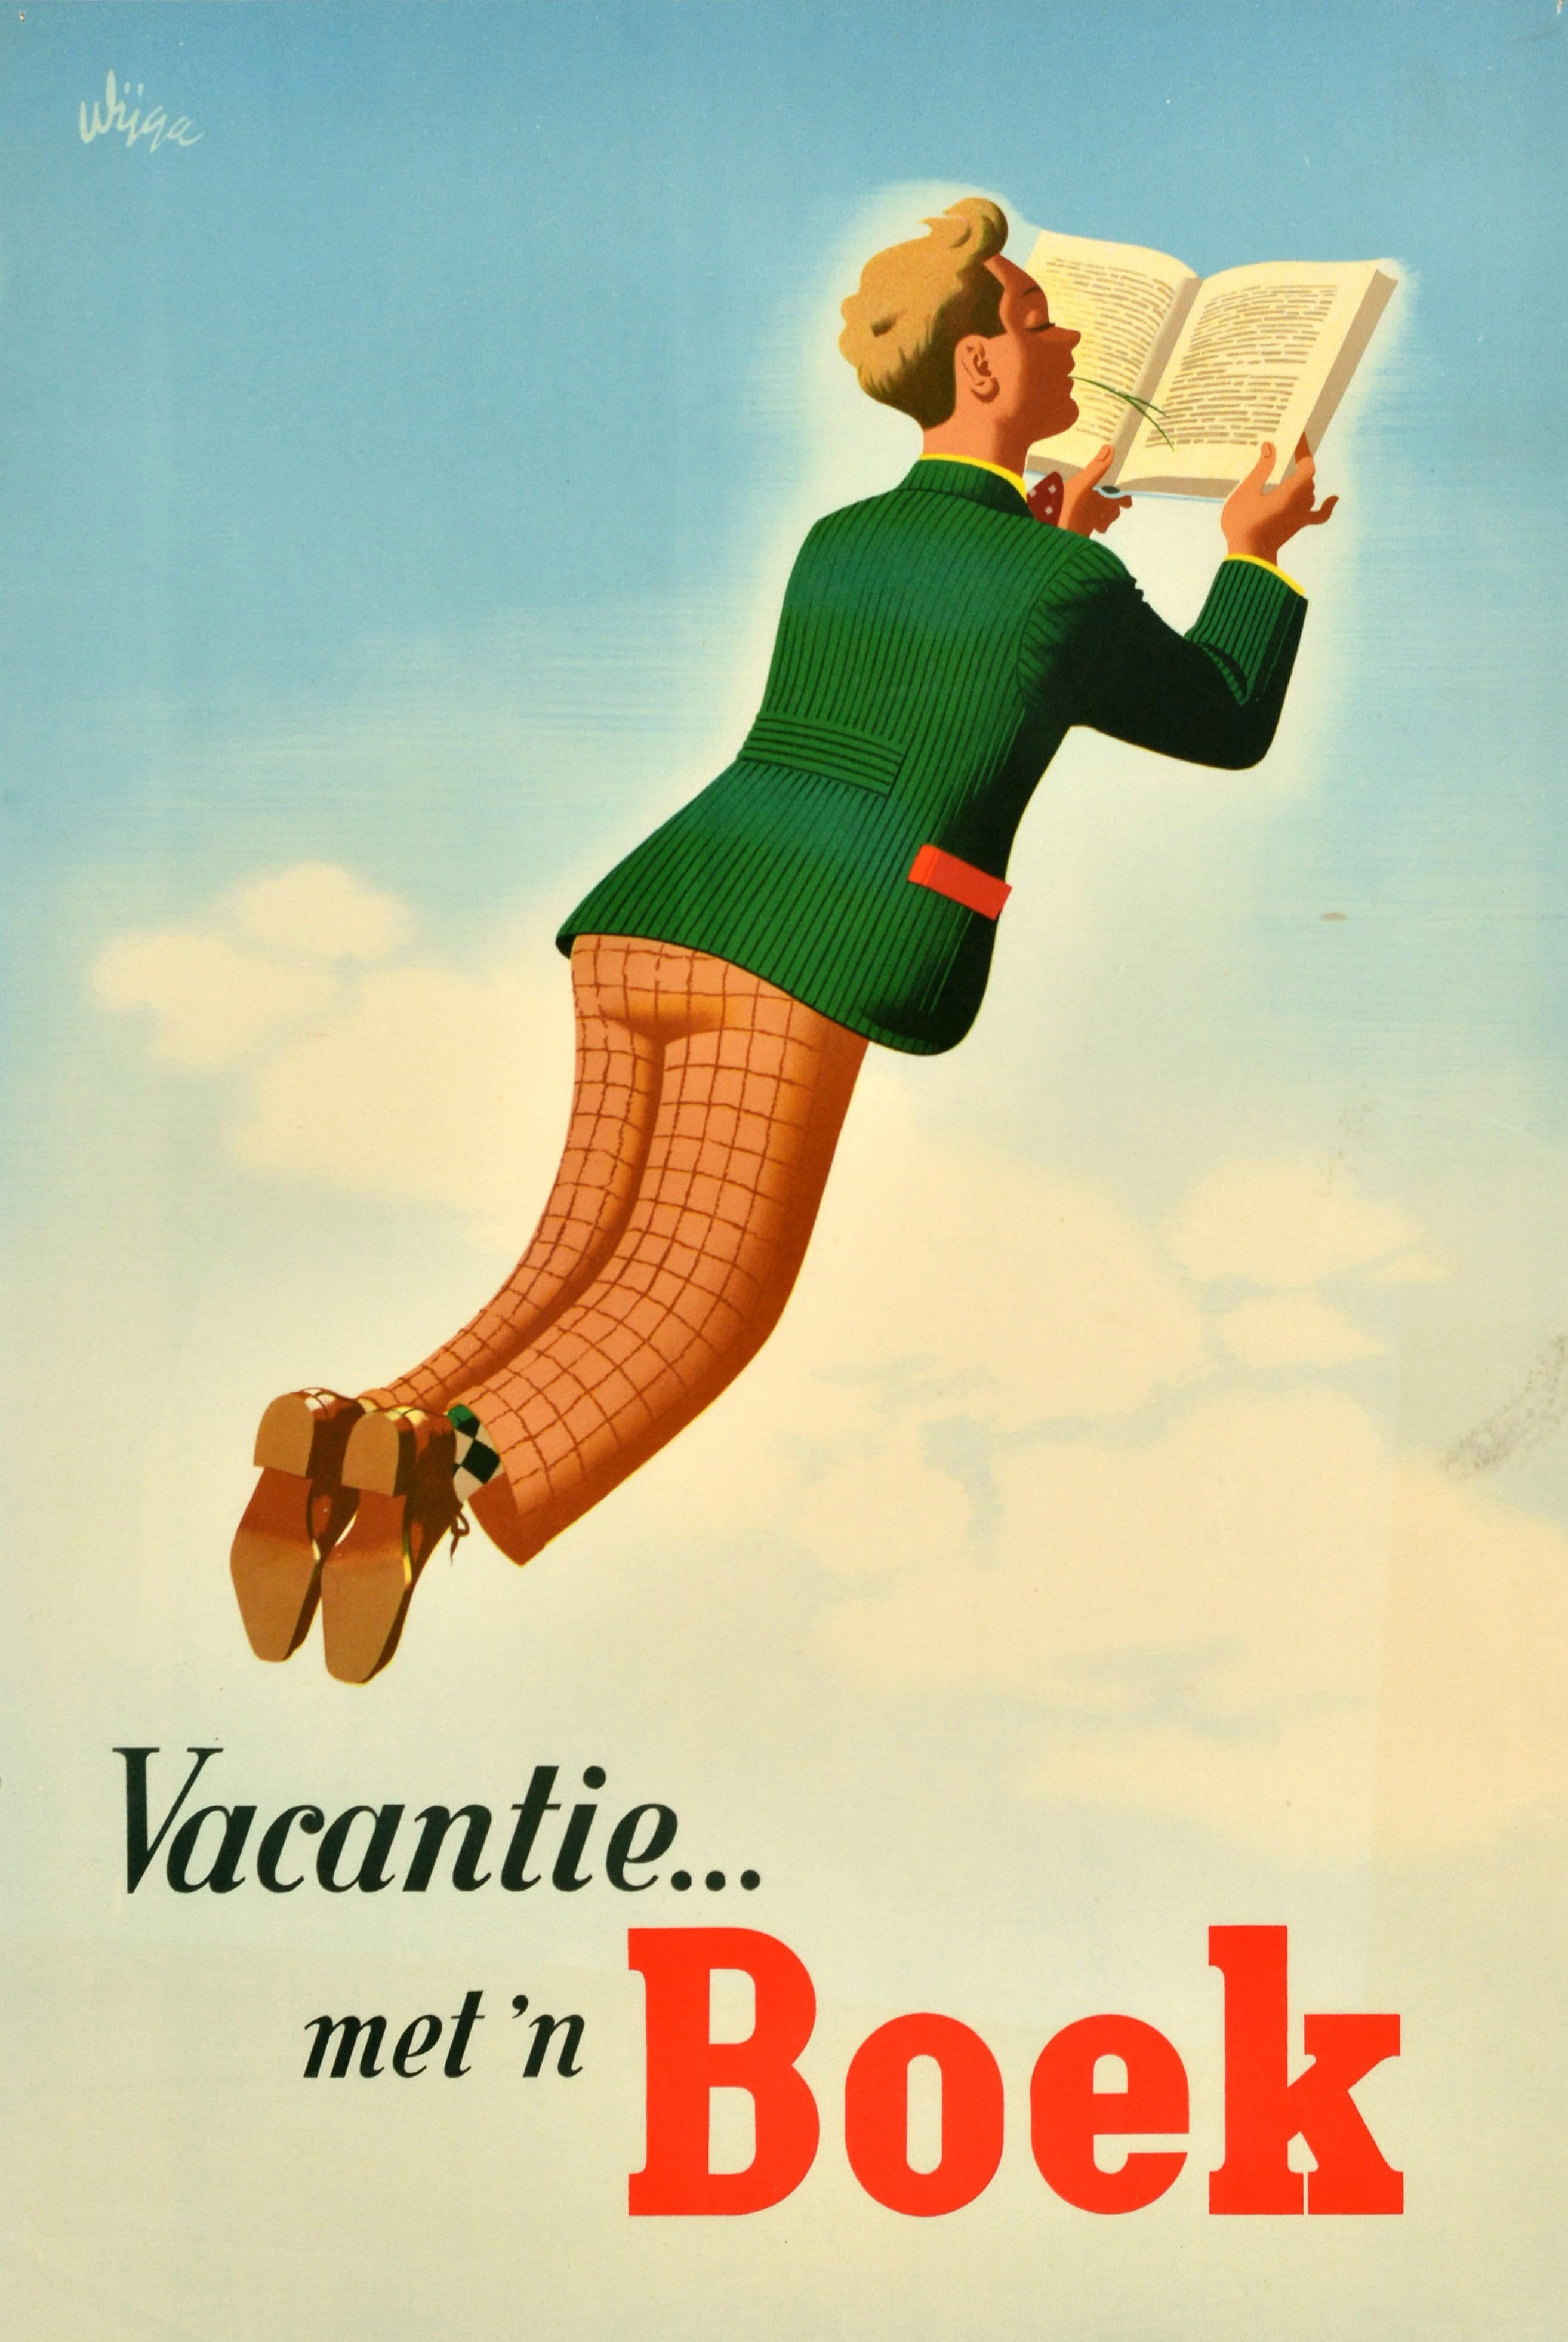 Original Vintage Advertising Poster Vacation Book Vacantie Boek Sky Jan Wijga For Sale 1